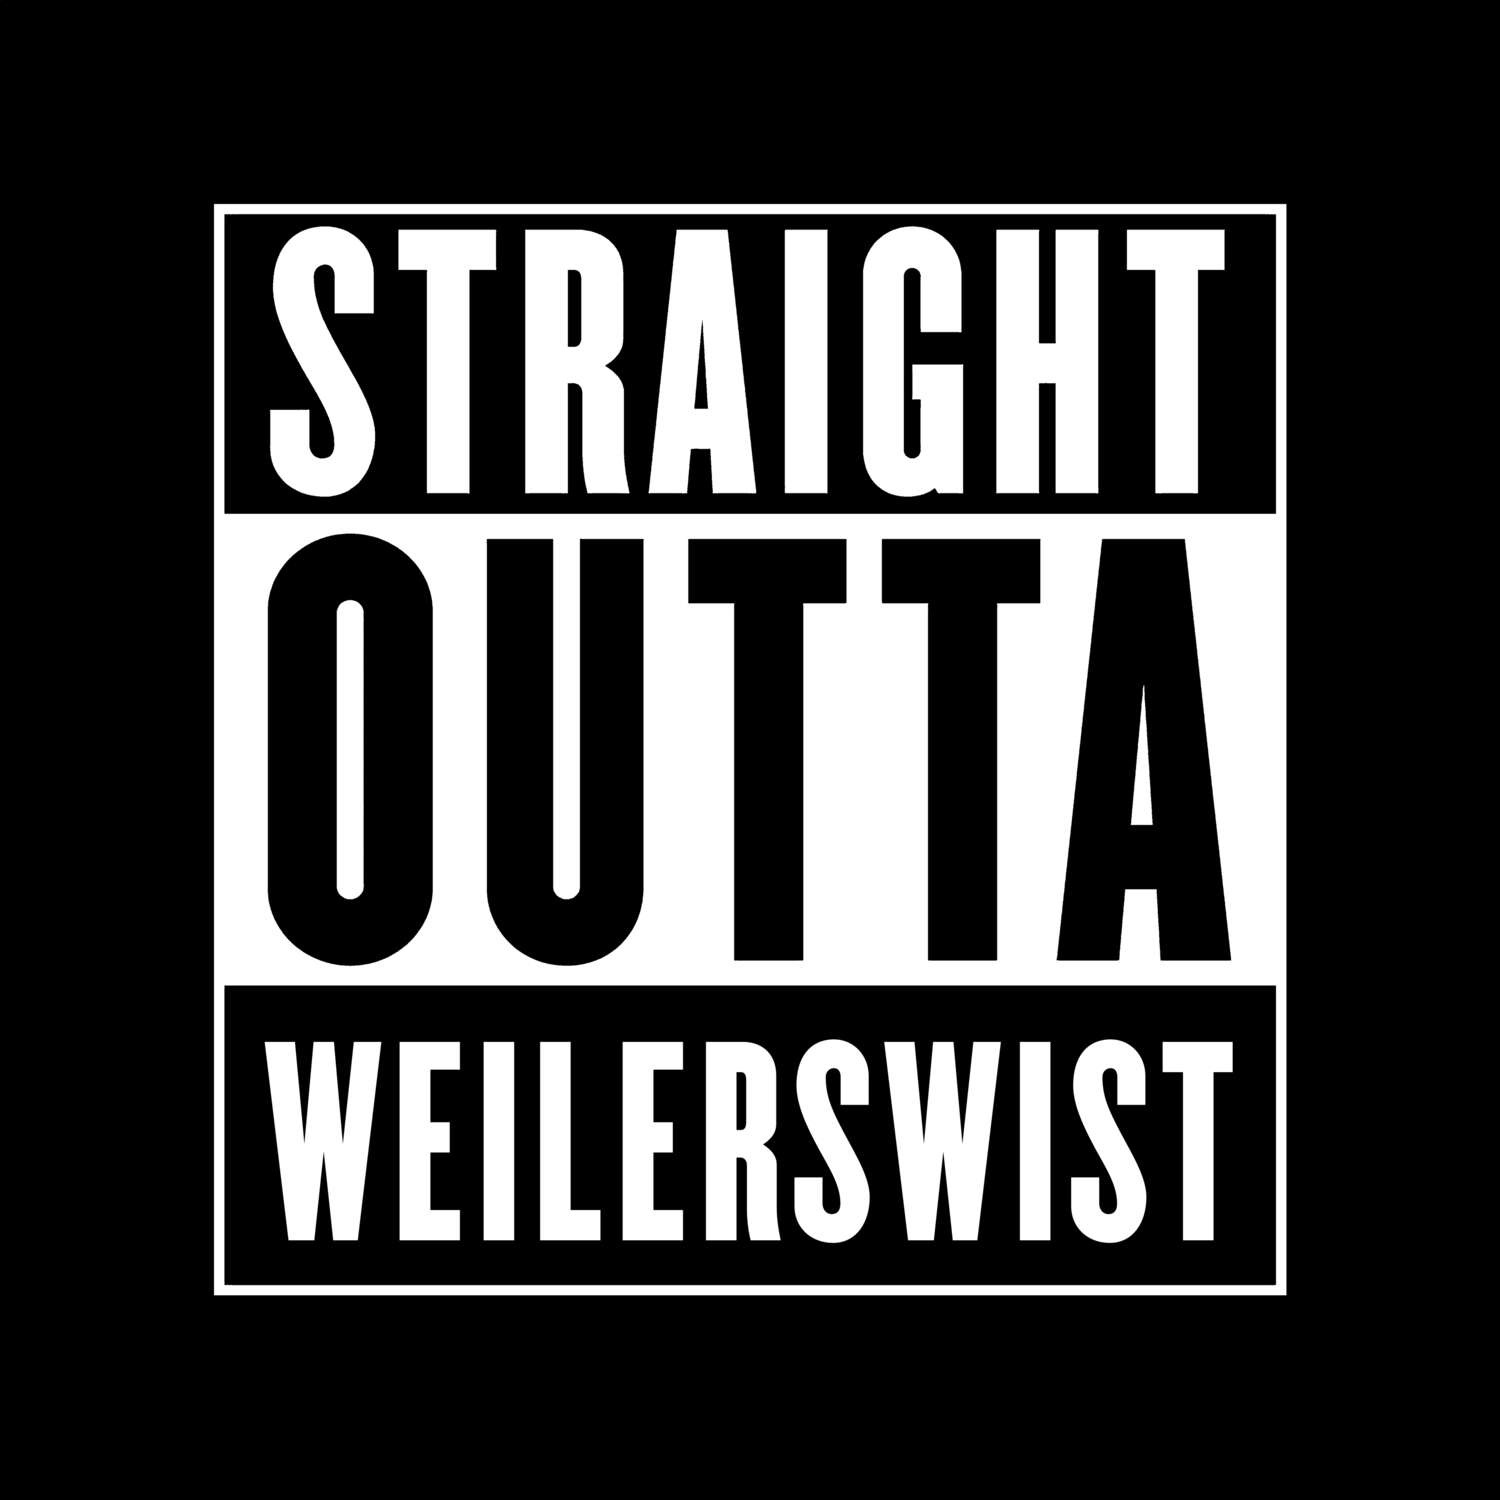 Weilerswist T-Shirt »Straight Outta«